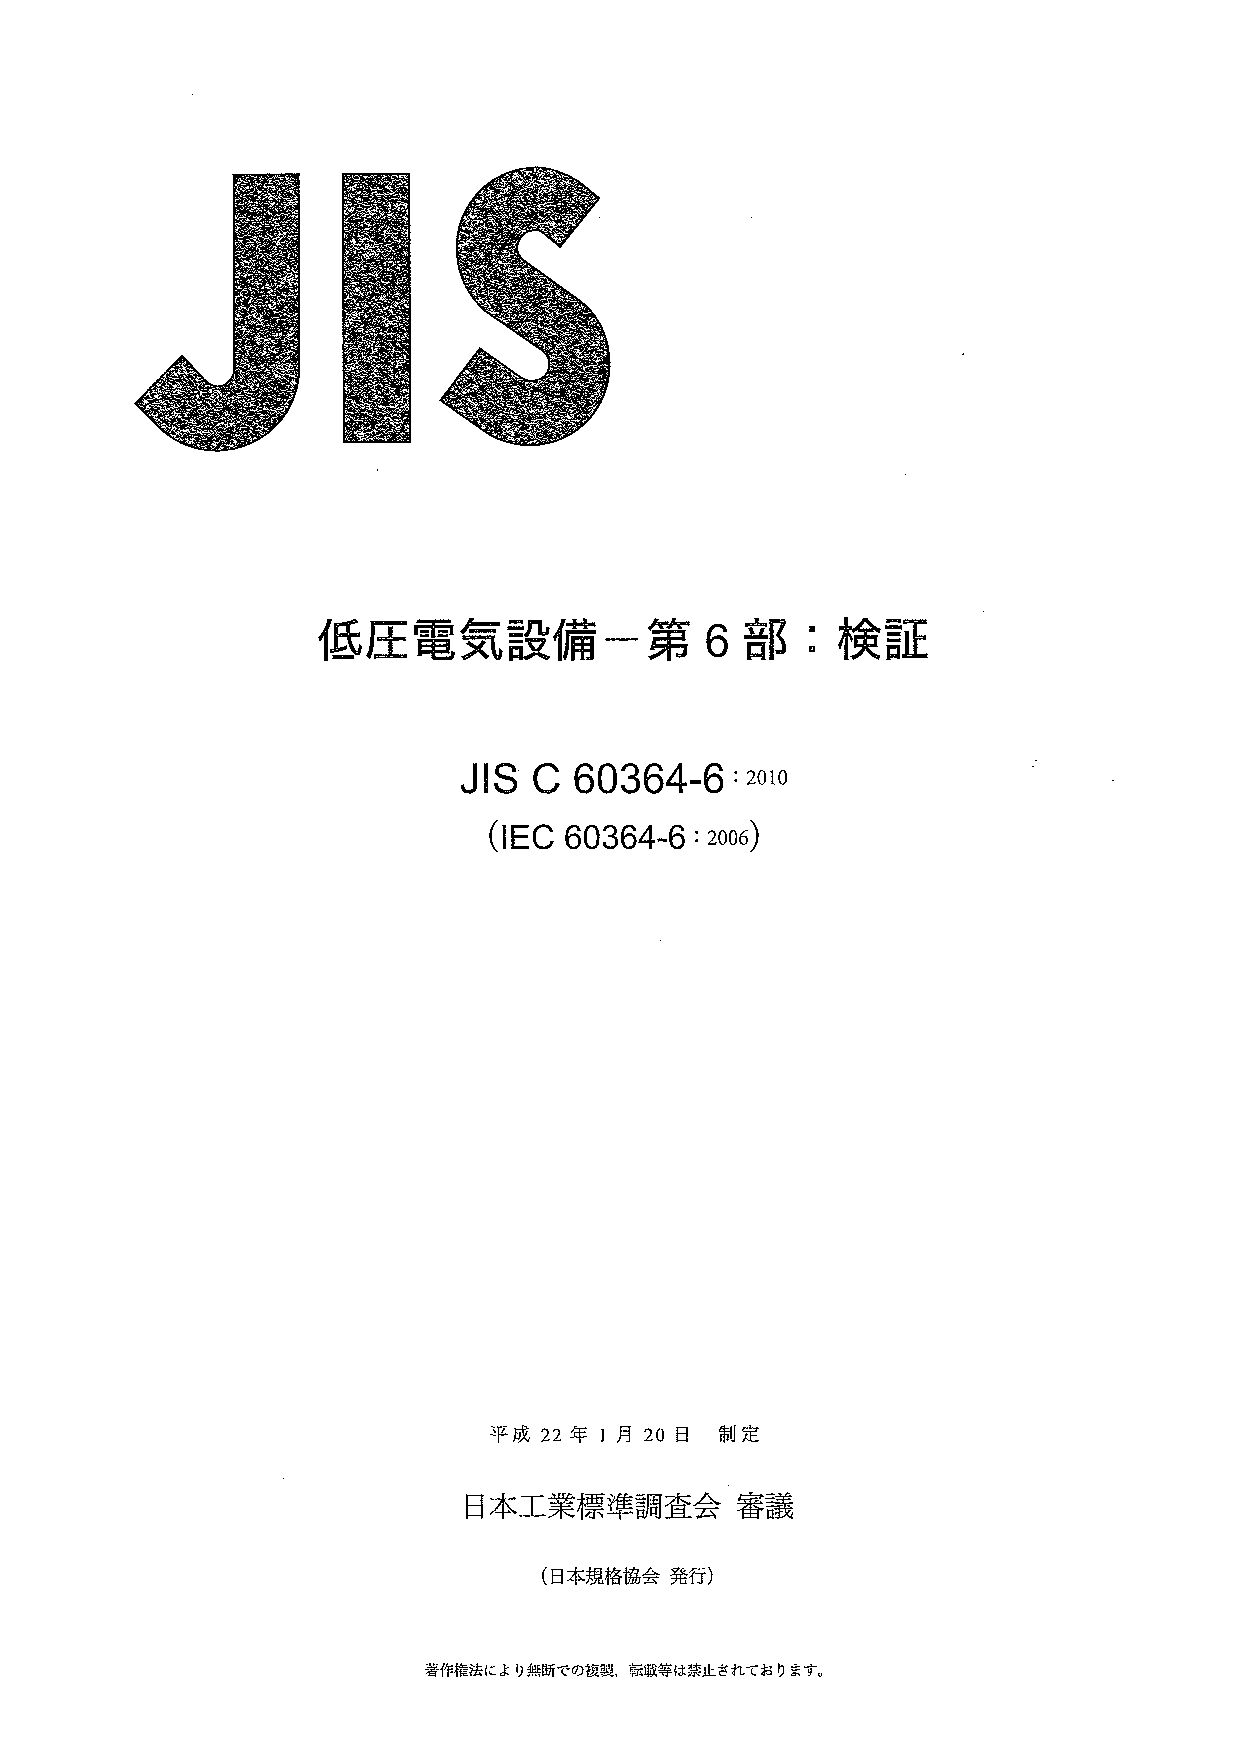 JIS C 60364-6:2010封面图